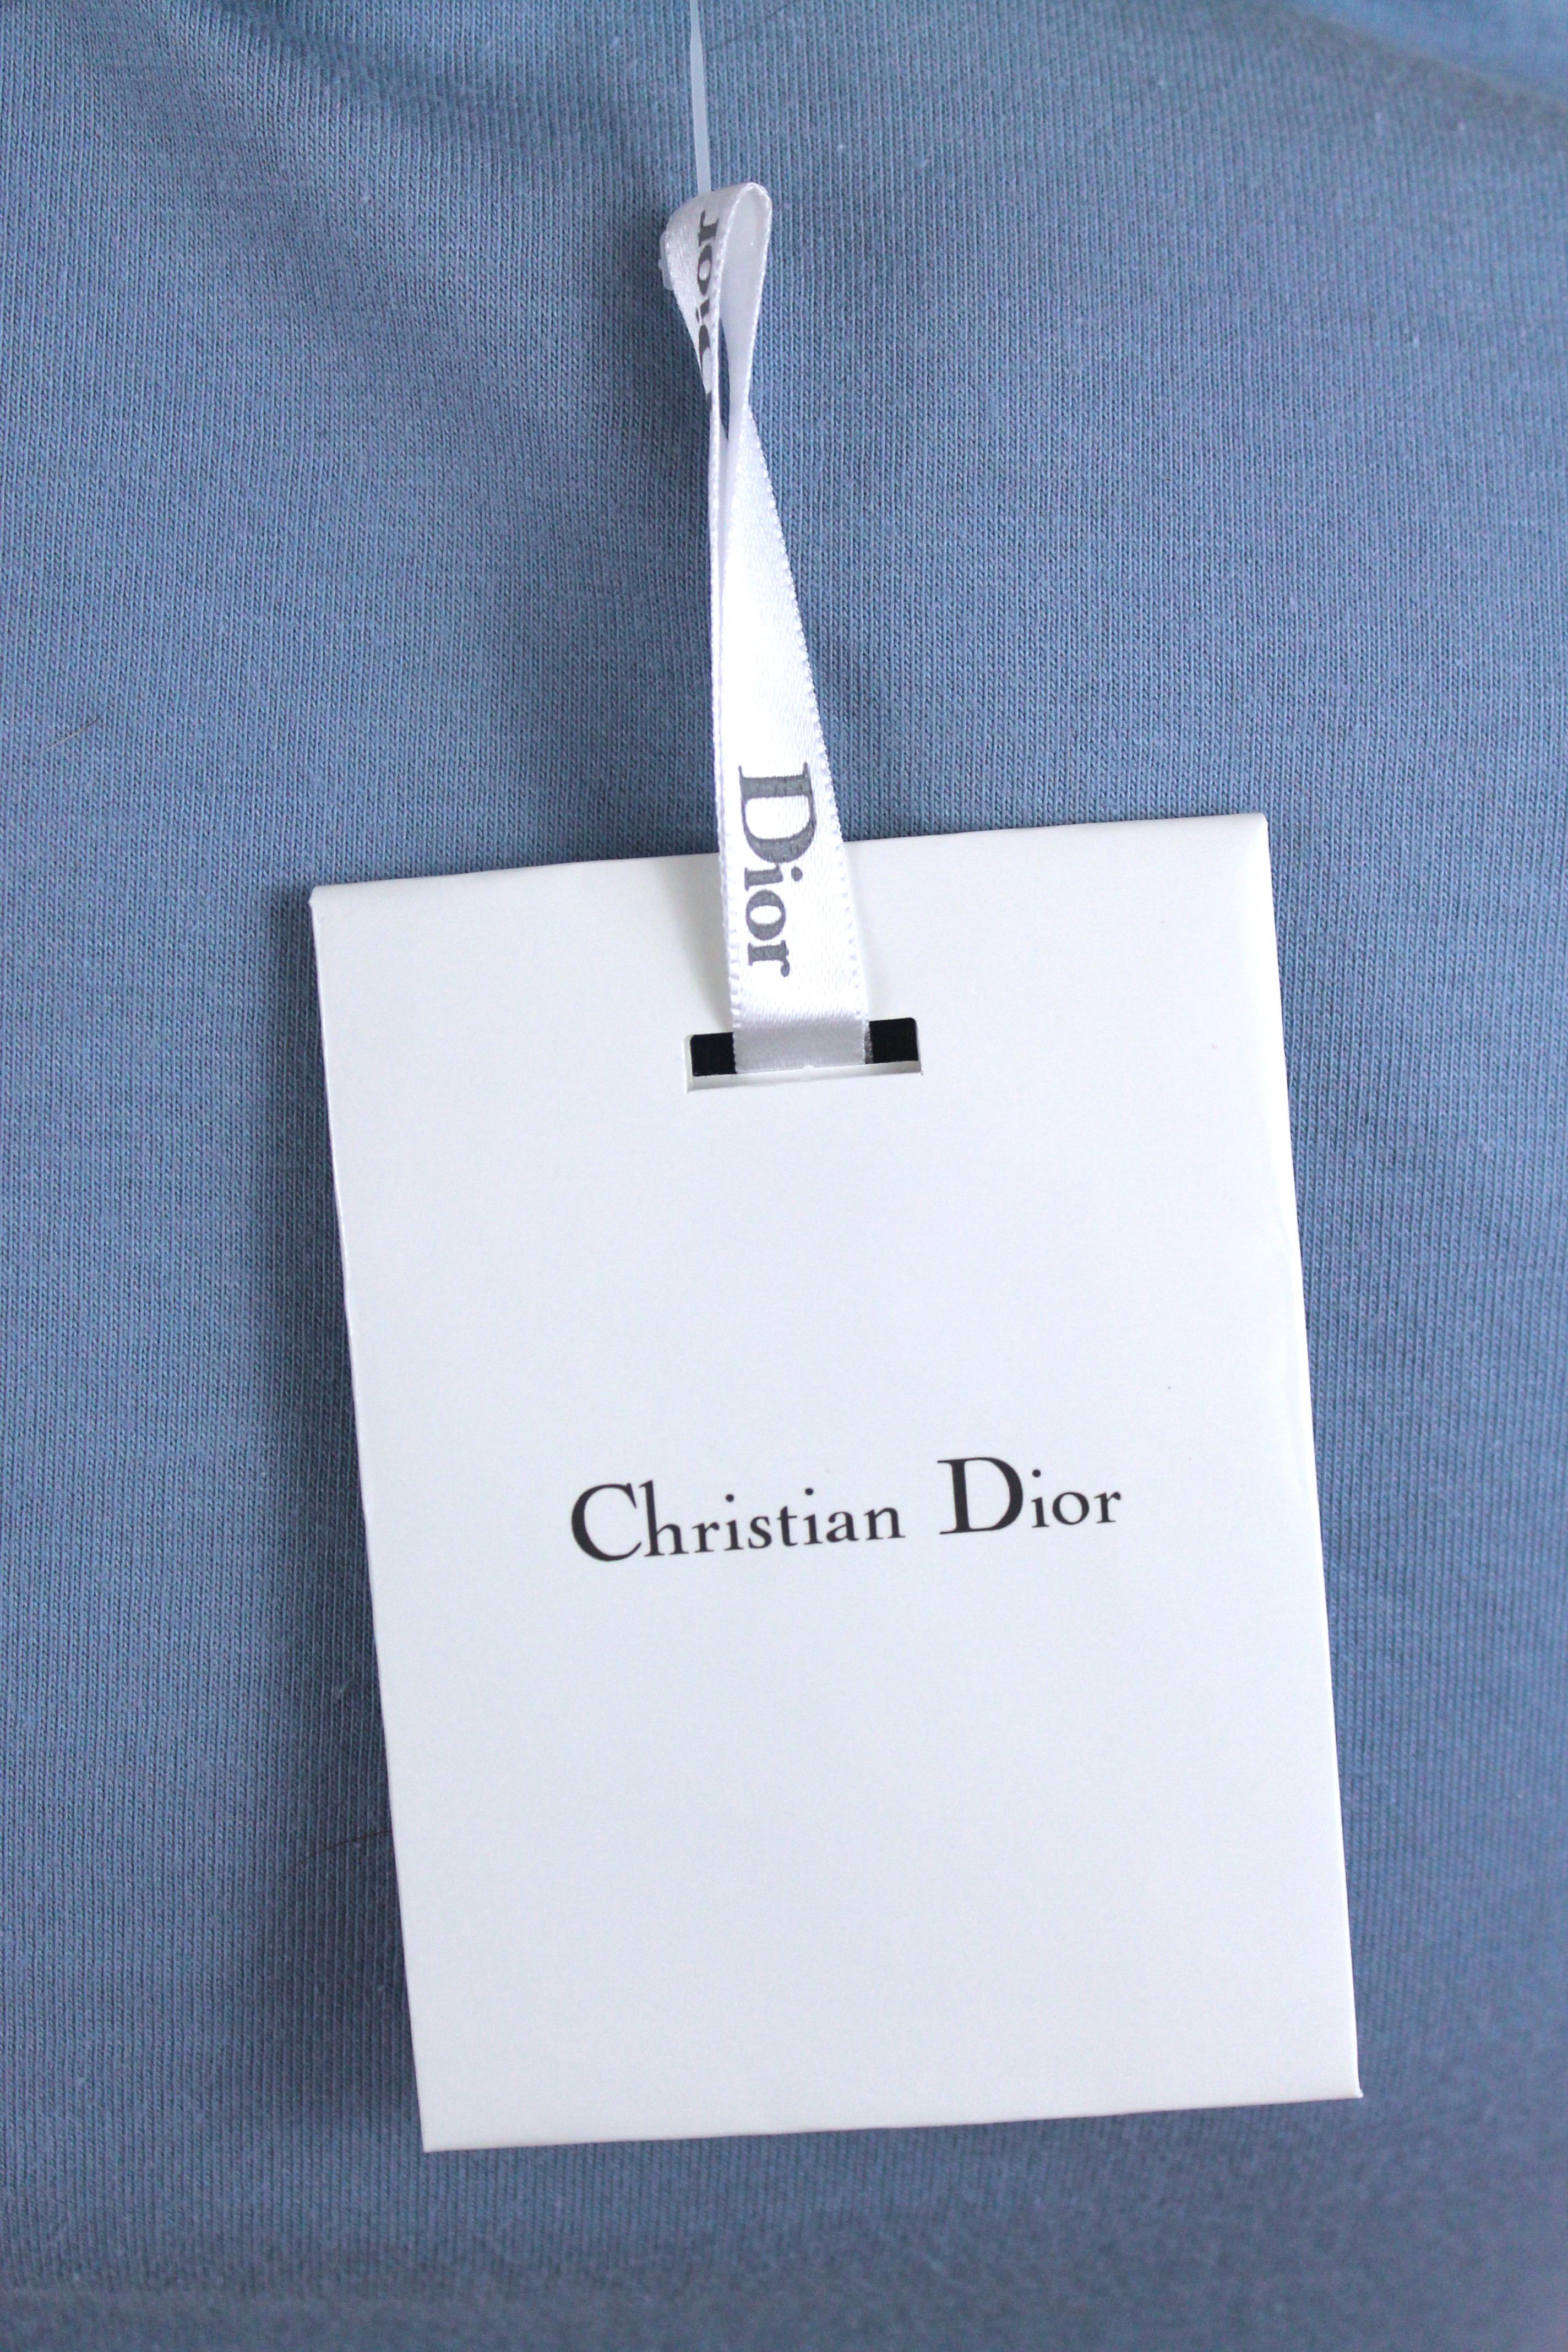 Christian Dior Denim Trompe L'oeil Cotton T-Shirt, c. 2000's, Size US 4 2